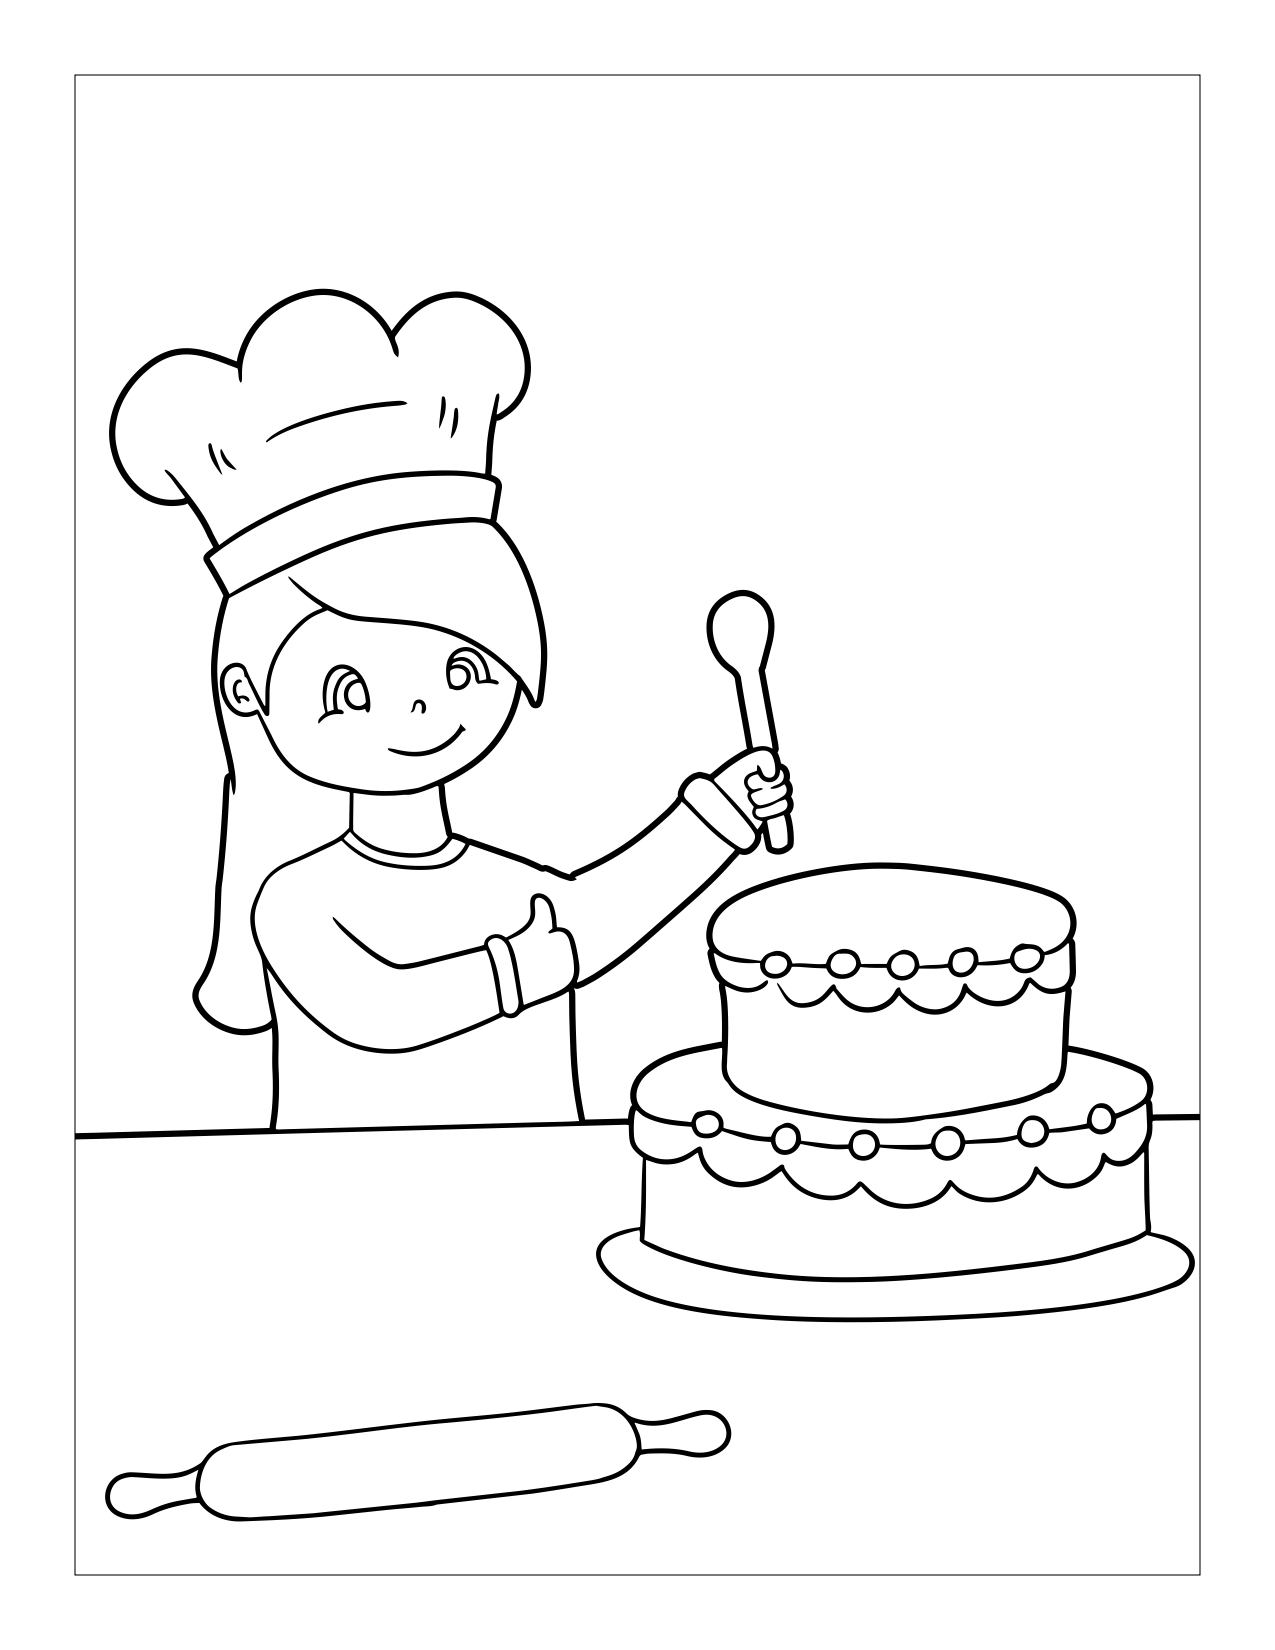 Disegno da colorare di bambina che prepara una torta